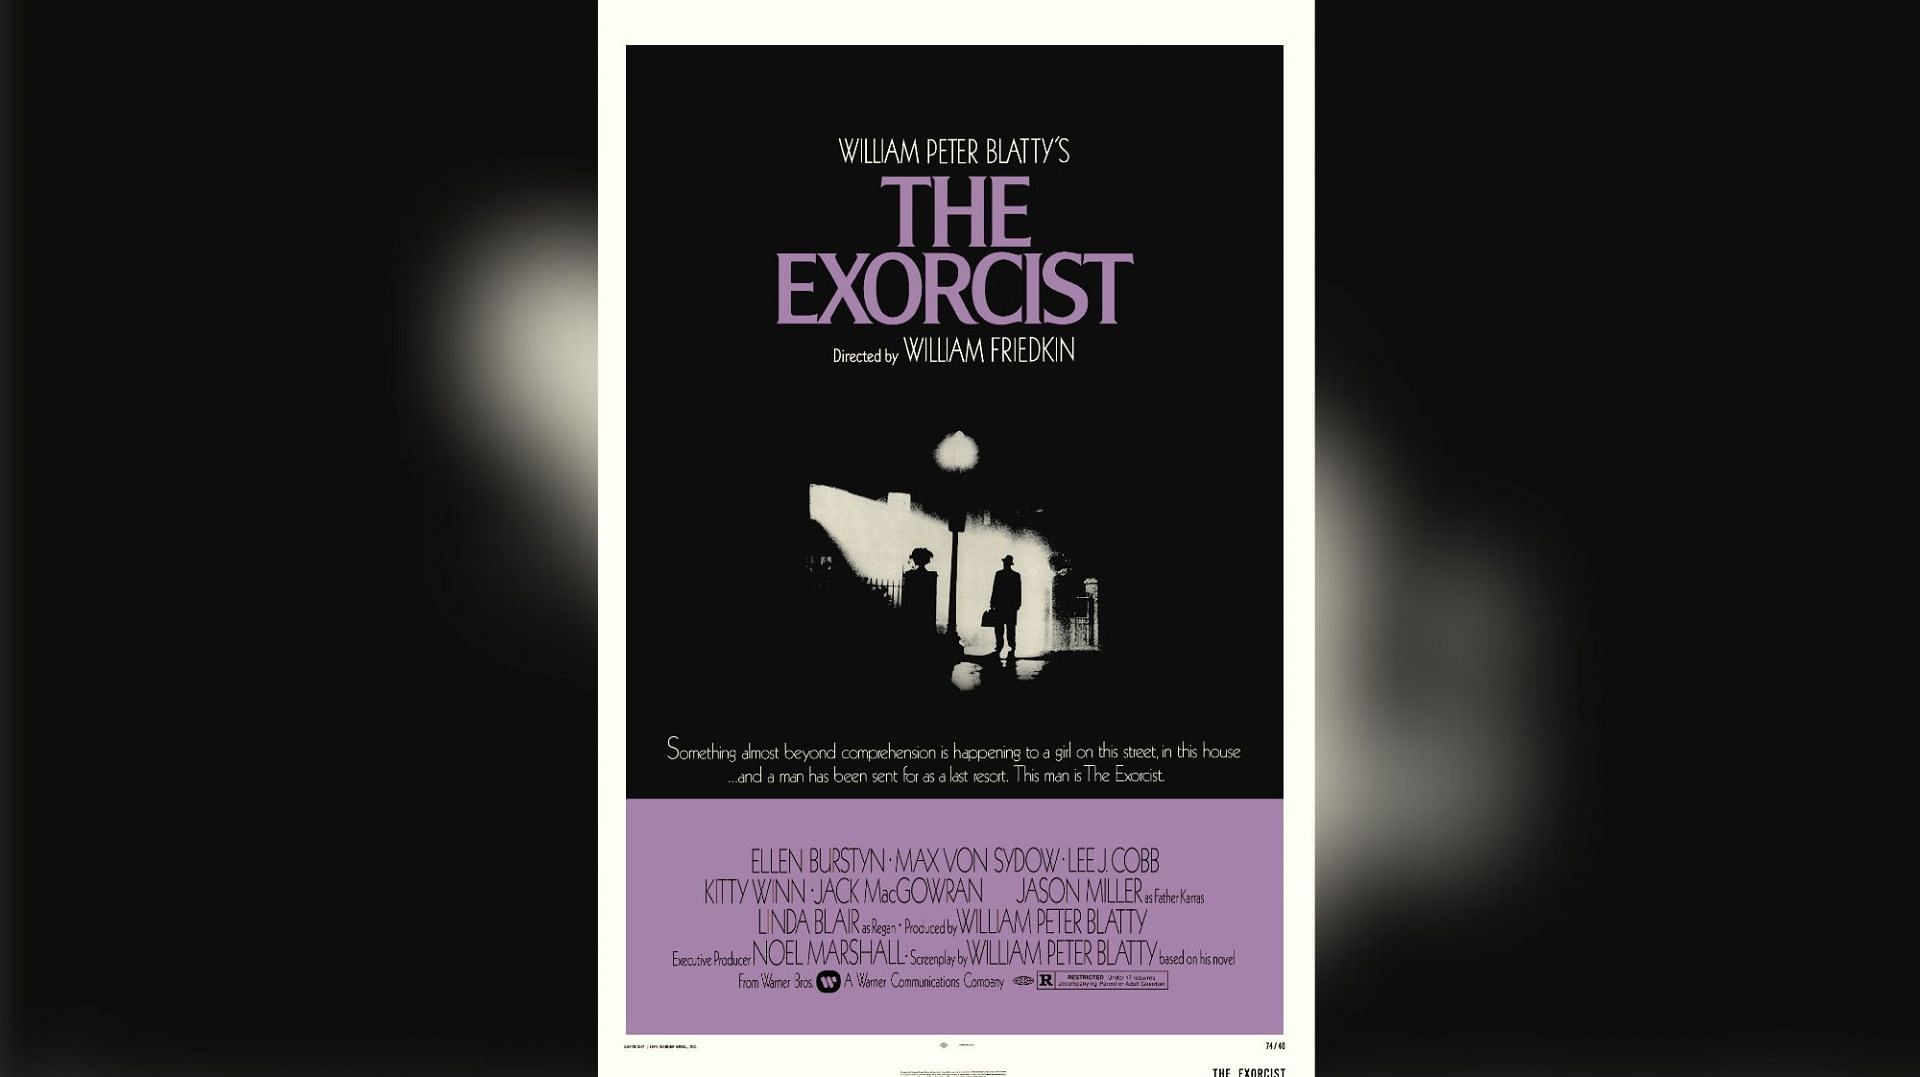 The Exorcist (Image via Warner Bros.)